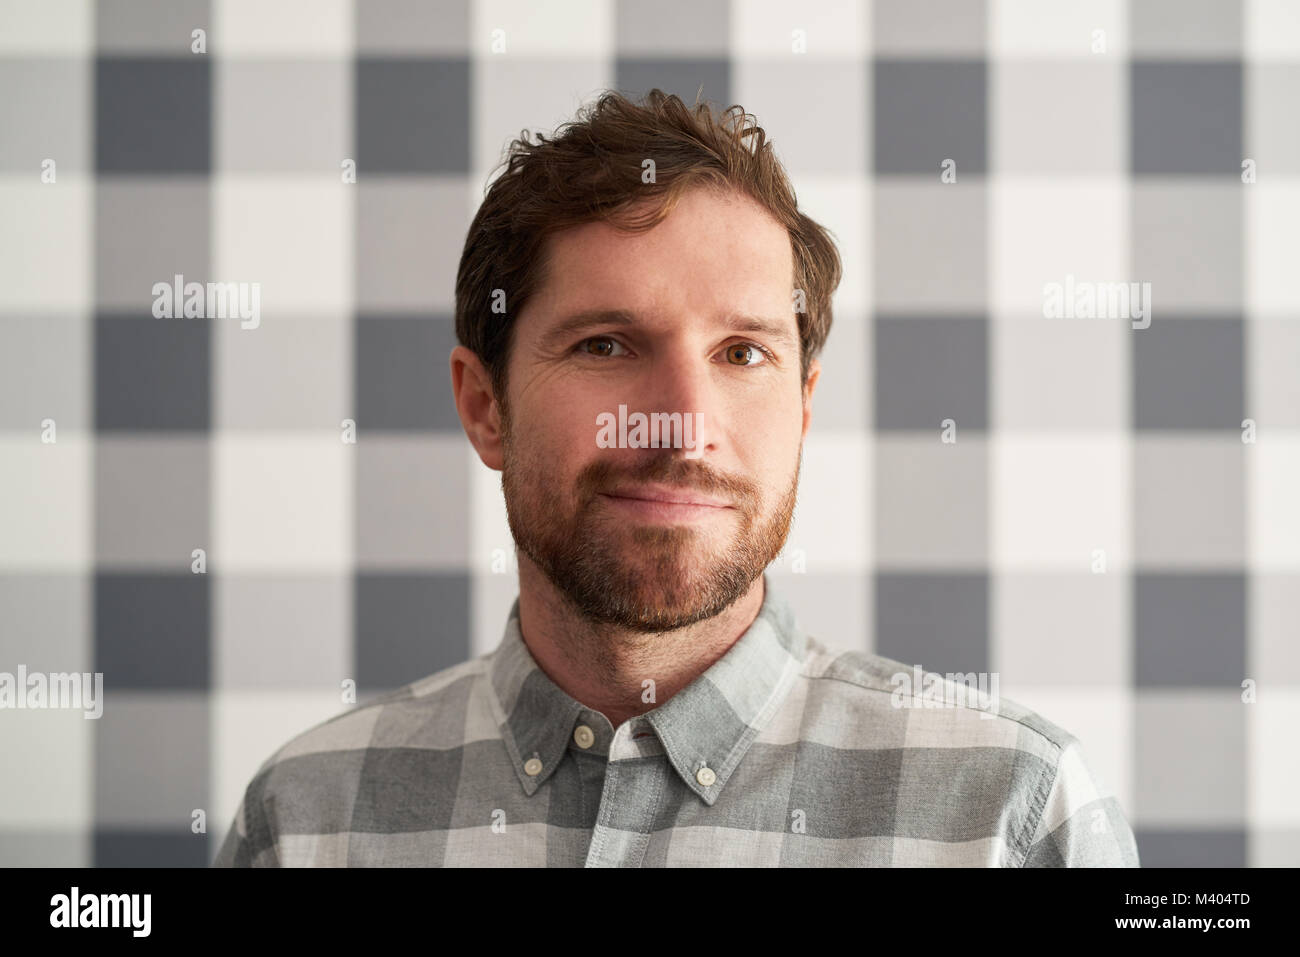 Sorridente giovane uomo che indossa una camicia matching il suo sfondo a scacchi Foto Stock